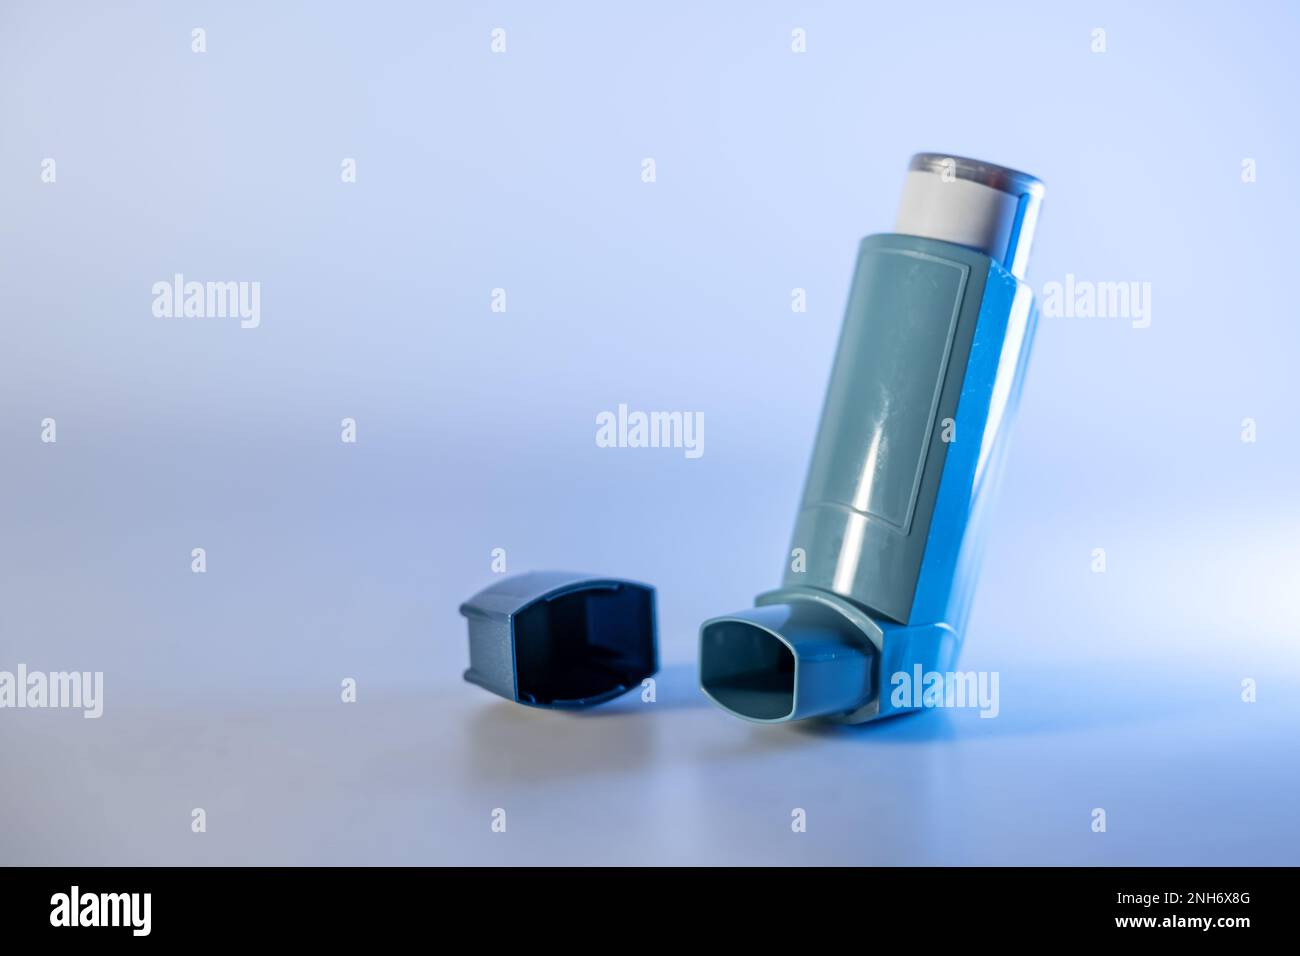 Inalatore blu, noto anche come pompa o spray allergico, dispositivo medico per i pazienti affetti da asma o BPCO, spazio di copia, focus selezionato, profondità di campo ristretta Foto Stock